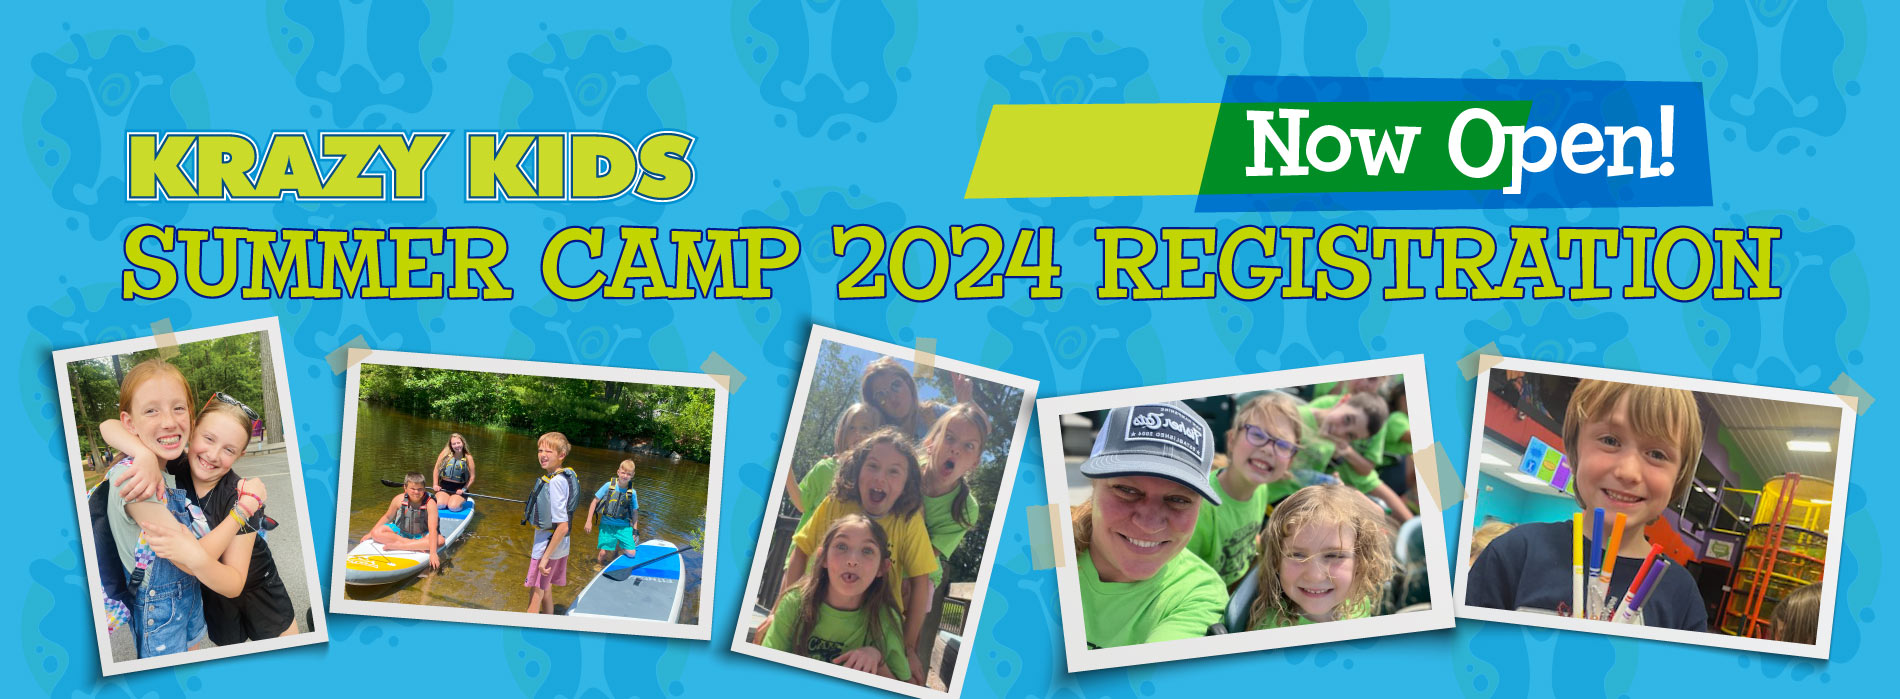 Summer Camp 2024 at Krazy Kids in Pembroke NH